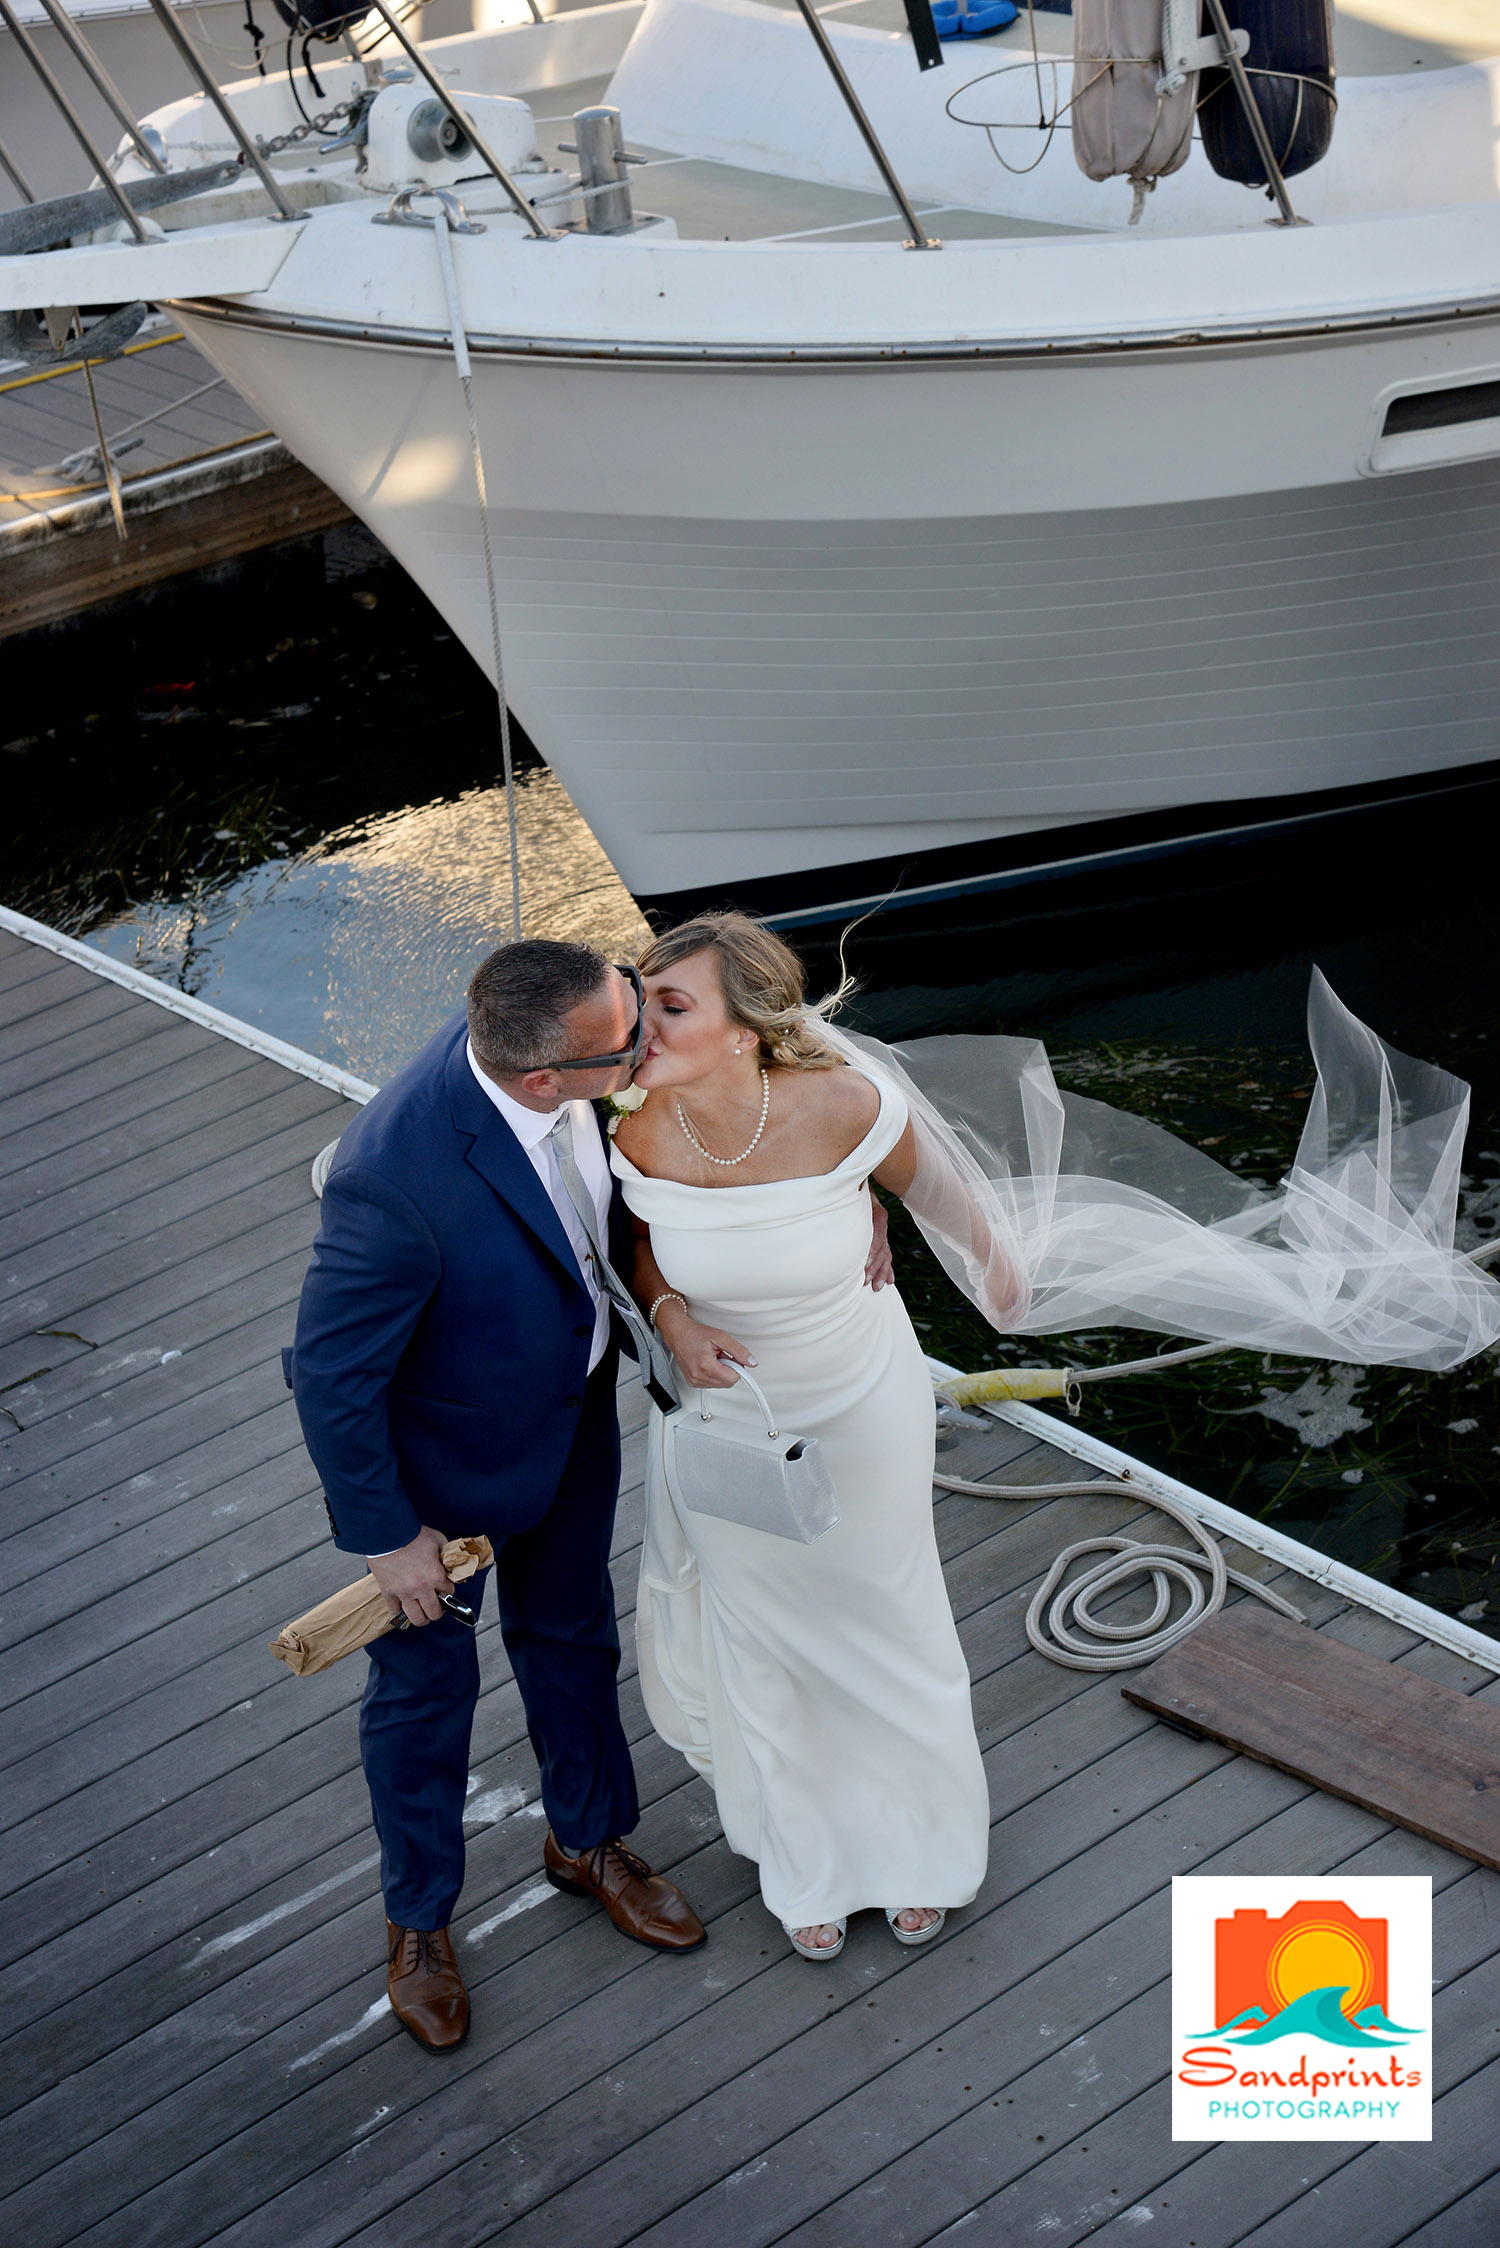 Wedding couple on the dock